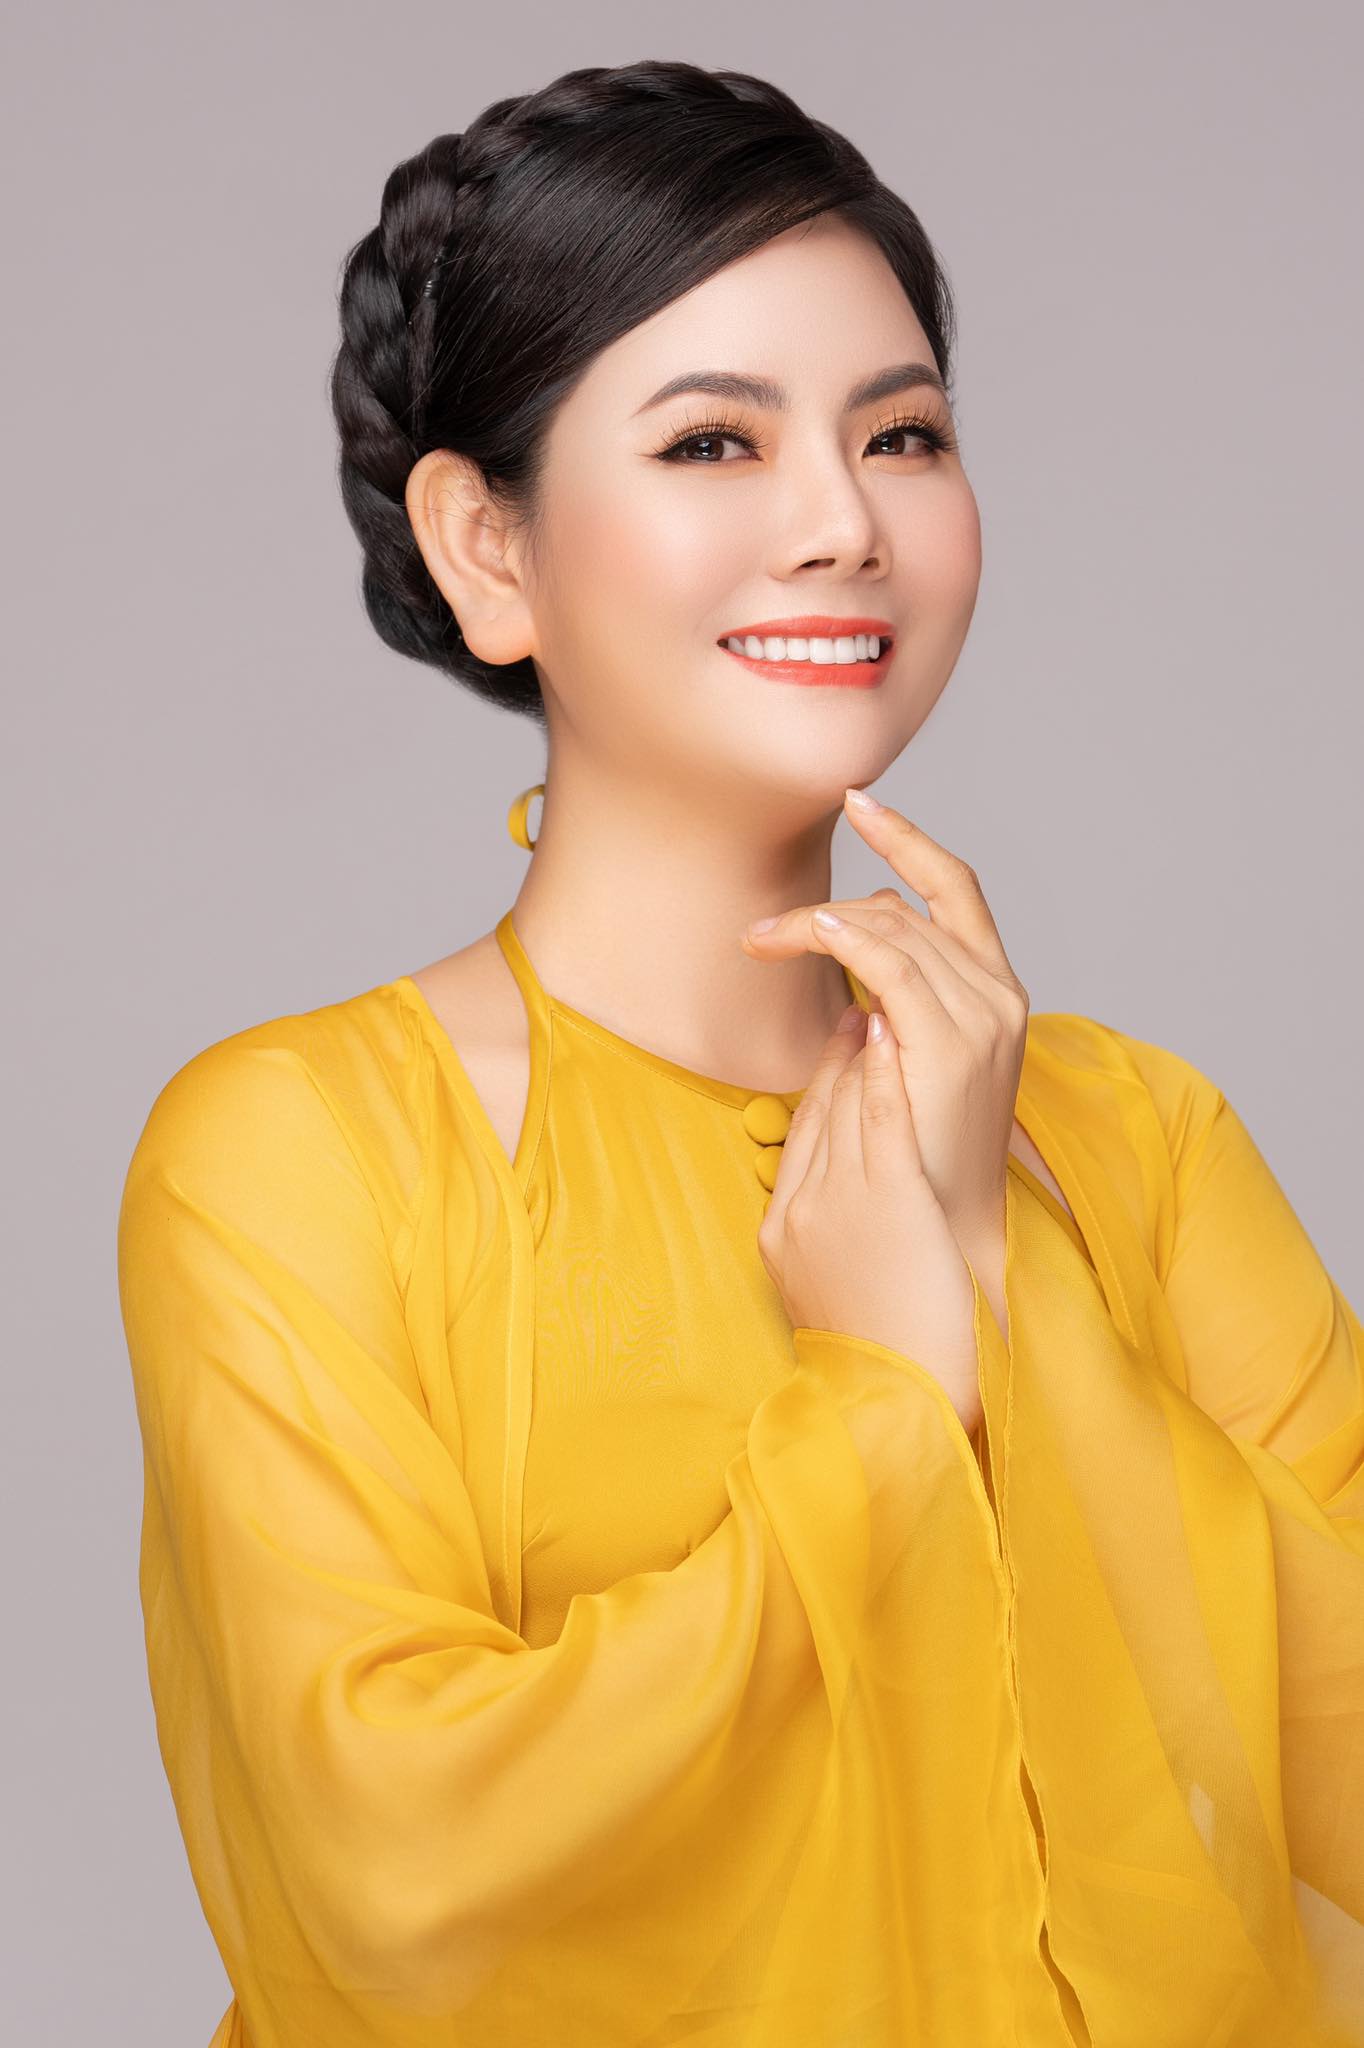 Ca sĩ Việt Hoàn: Chương trình nhạc cách mạng không bao giờ ế vé hay lỗ - Ảnh 2.